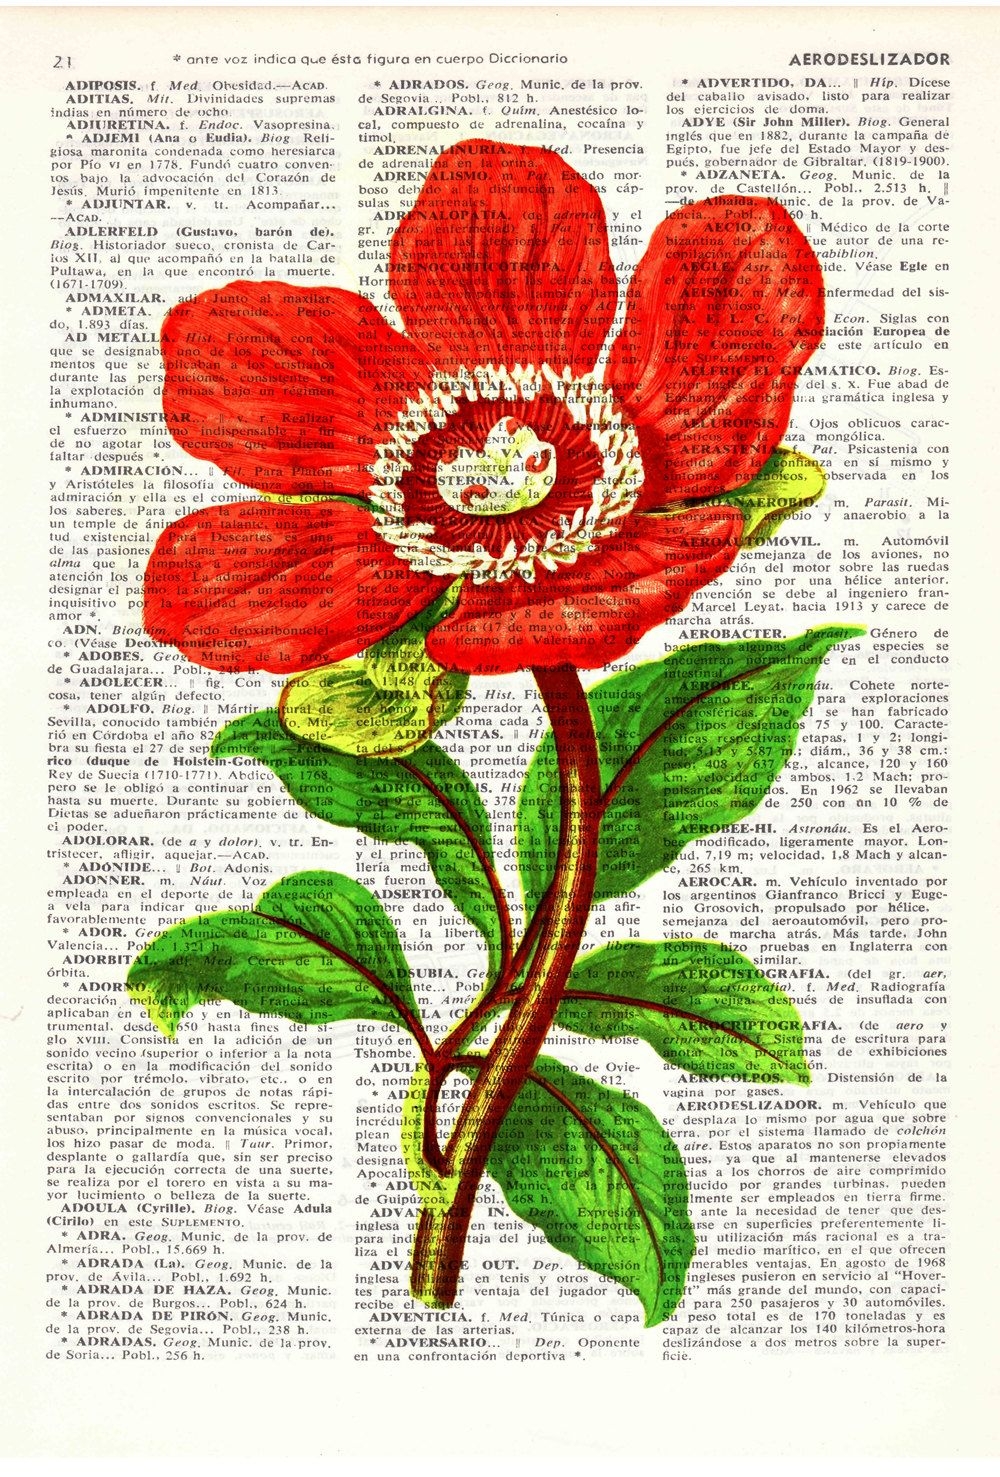 Редкая красота: цветы из Красной книги